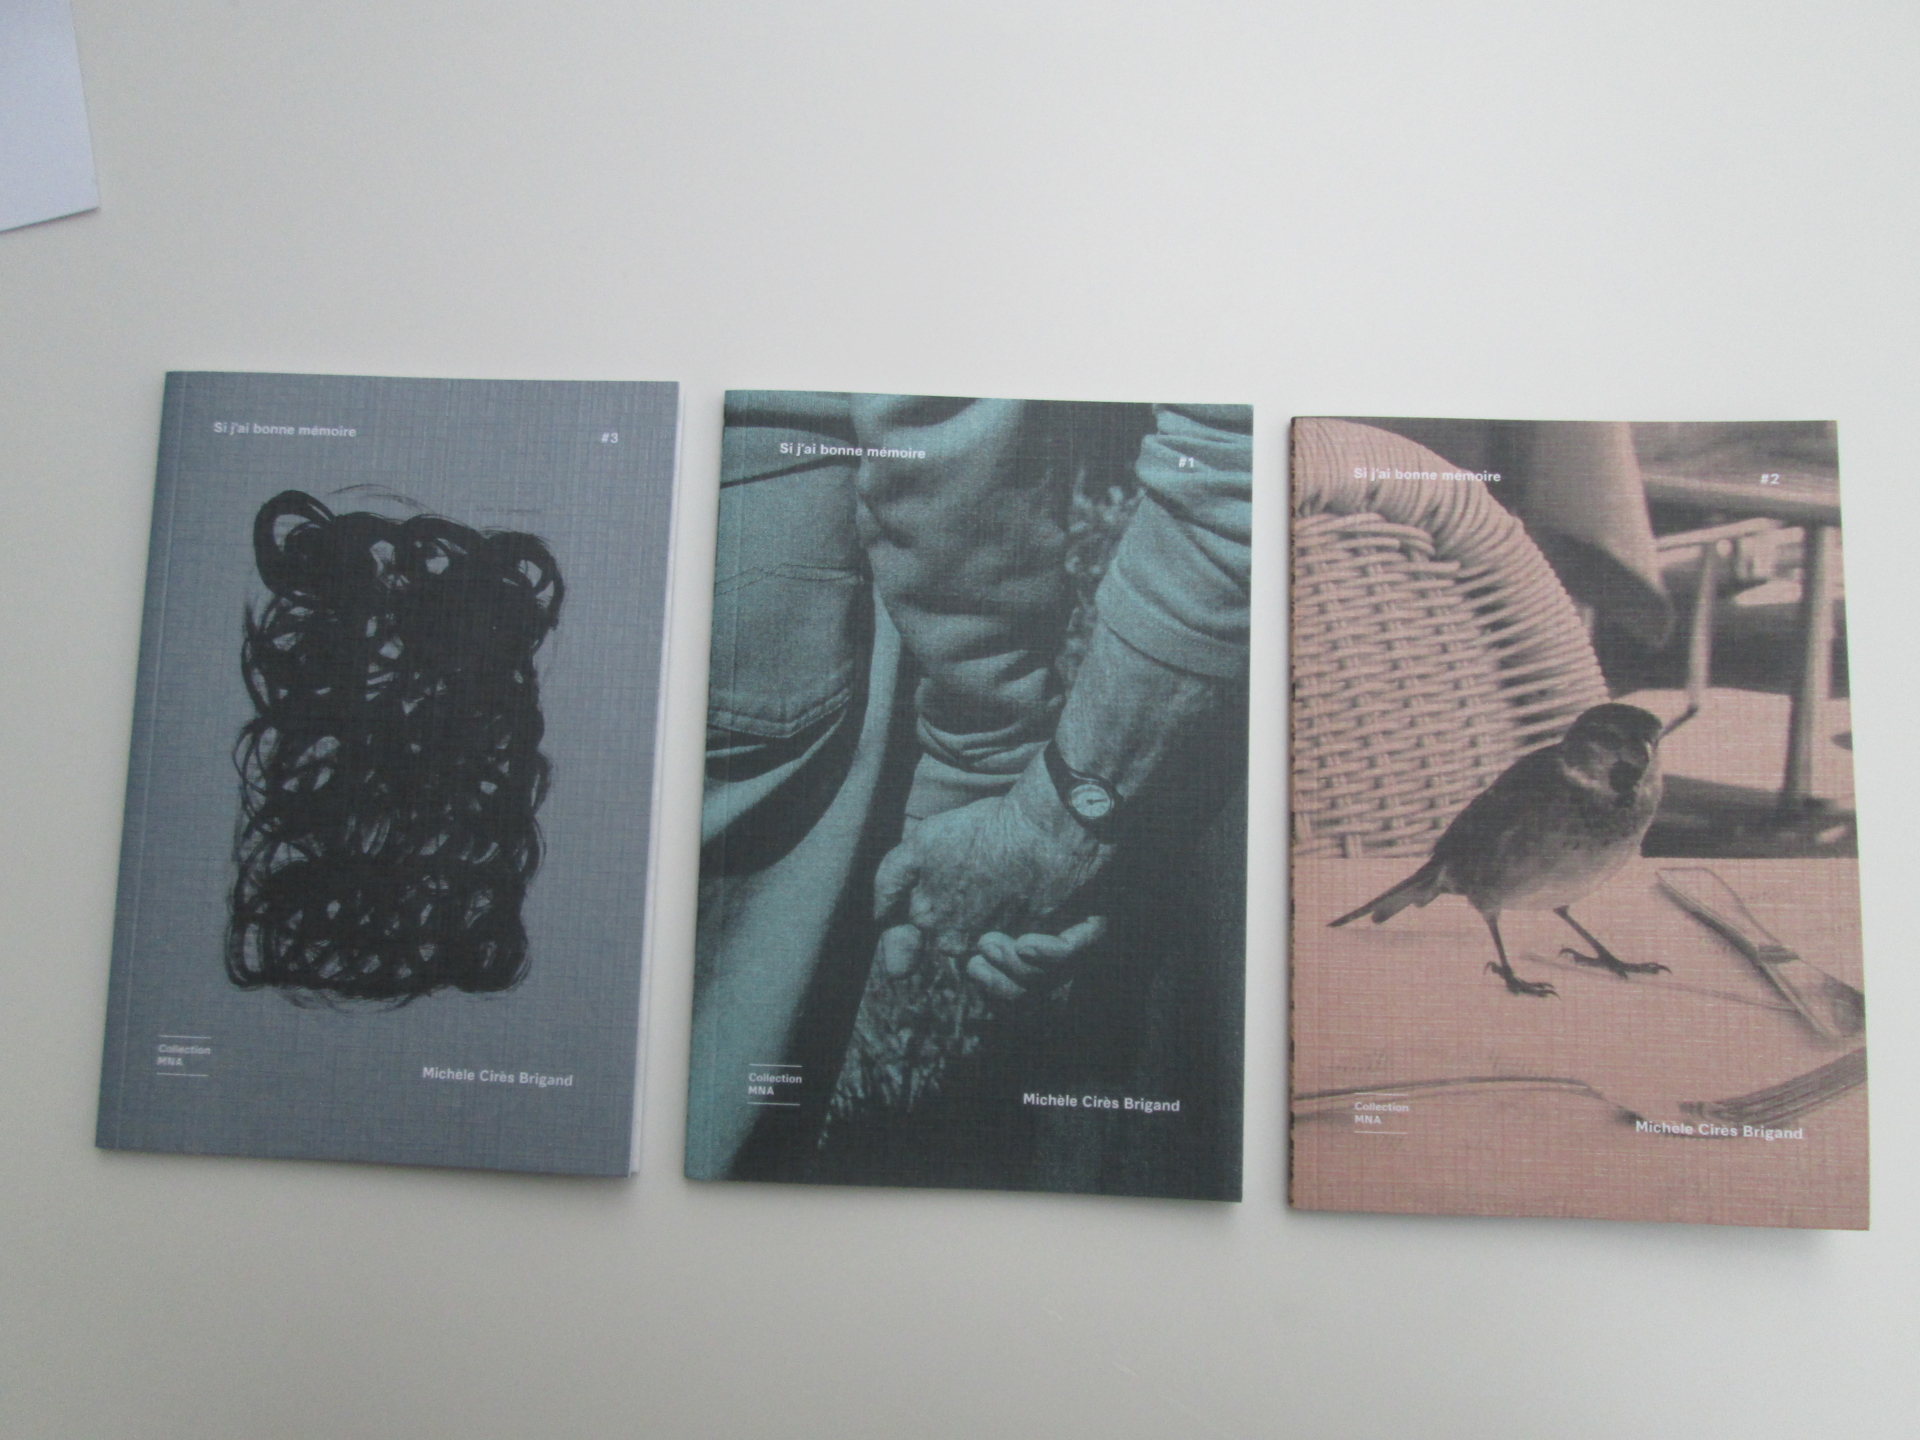 La collection MNA, trois livrets consacrés à la résidence de Michèle Cirès Brigand ,«Si j’ai bonne mémoire »